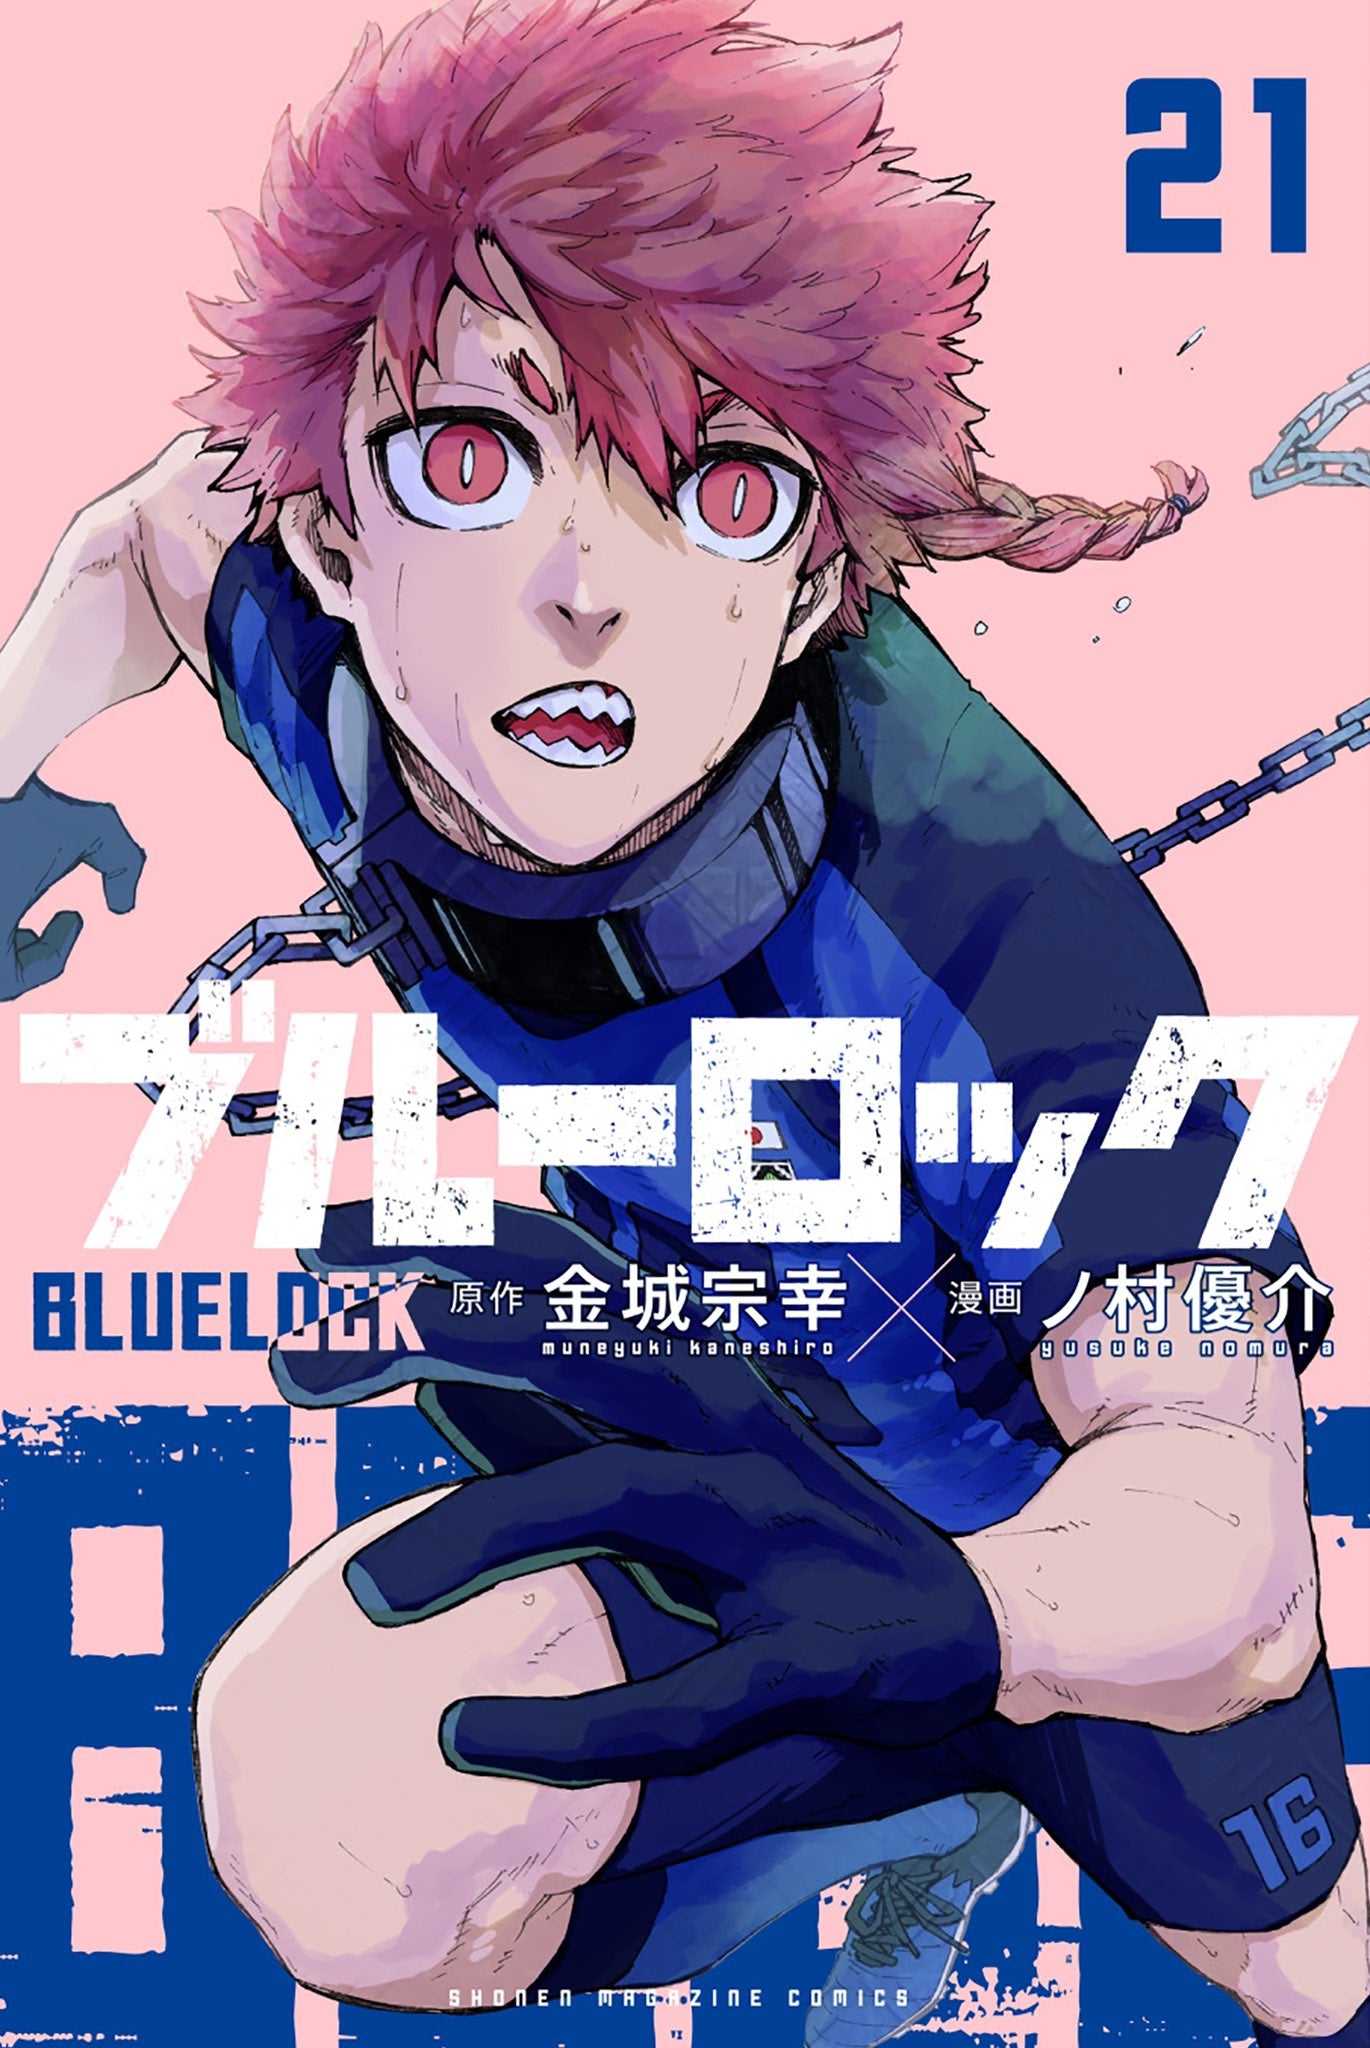 Blue lock — القفل الأزرق